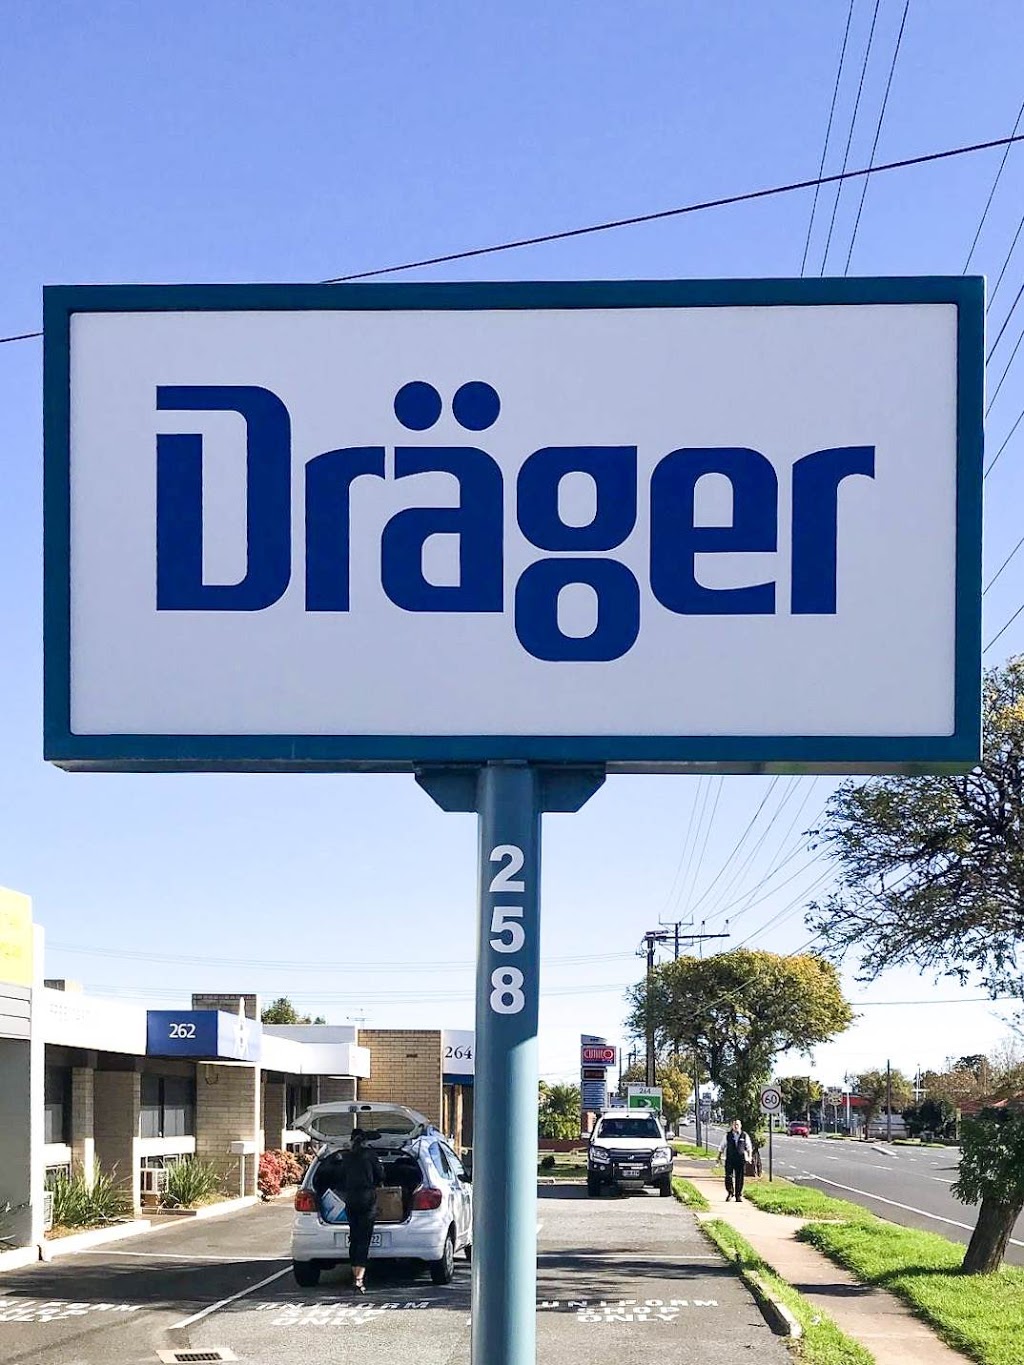 Draeger Interlock Service Centre | car repair | 258 Grange Rd, Flinders Park SA 5025, Australia | 1300780689 OR +61 1300 780 689